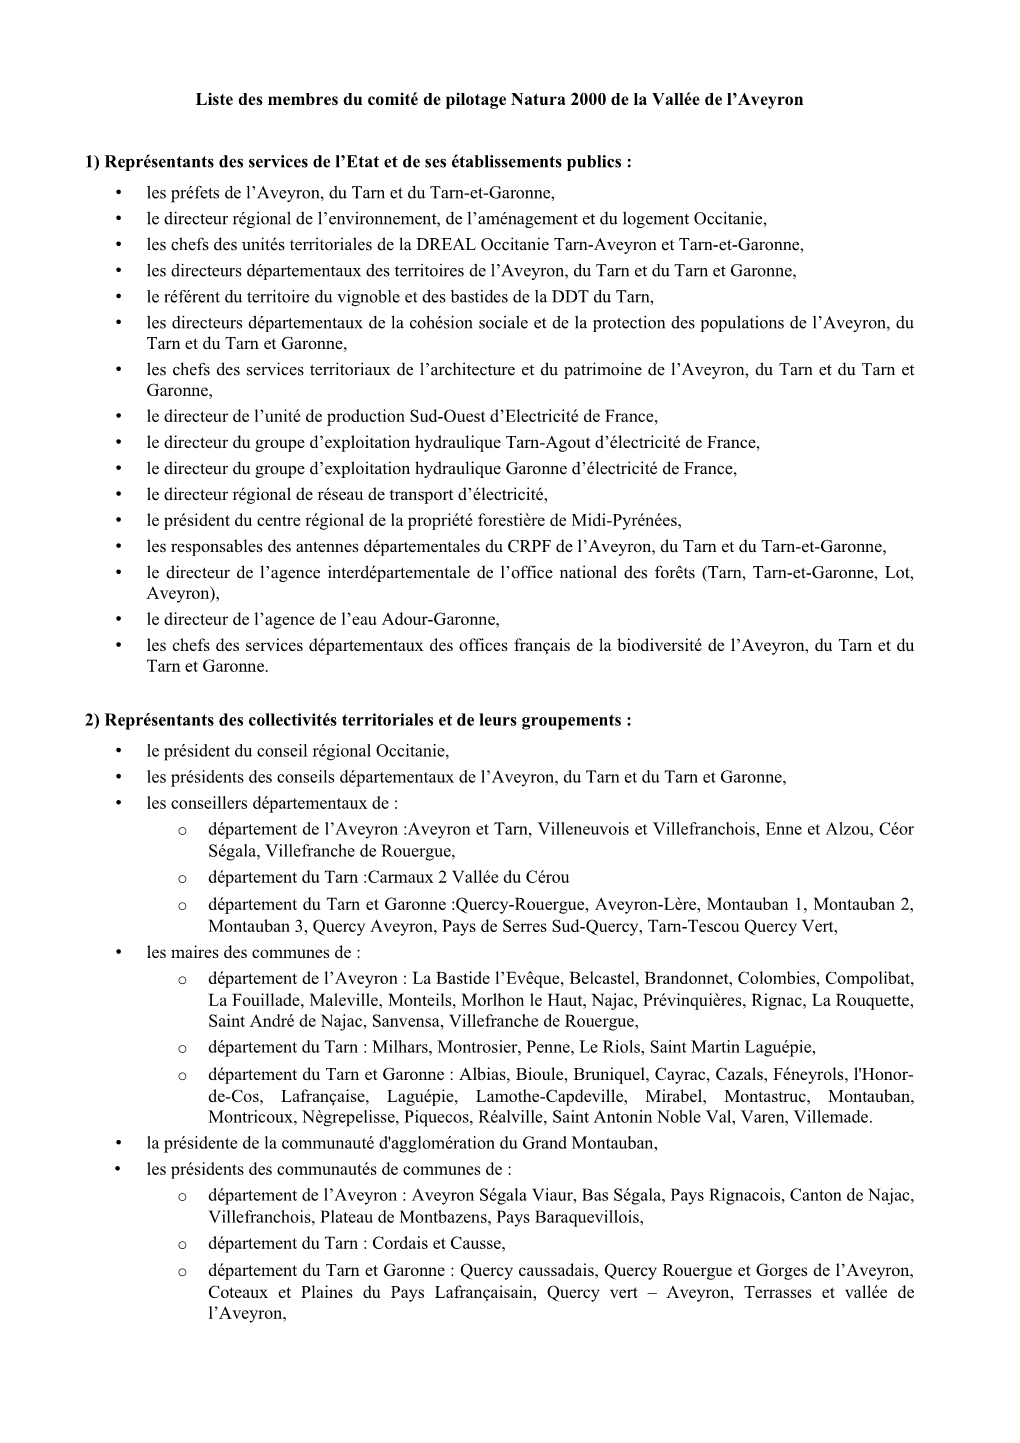 Liste Des Membres Du Comité De Pilotage Natura 2000 De La Vallée De L’Aveyron